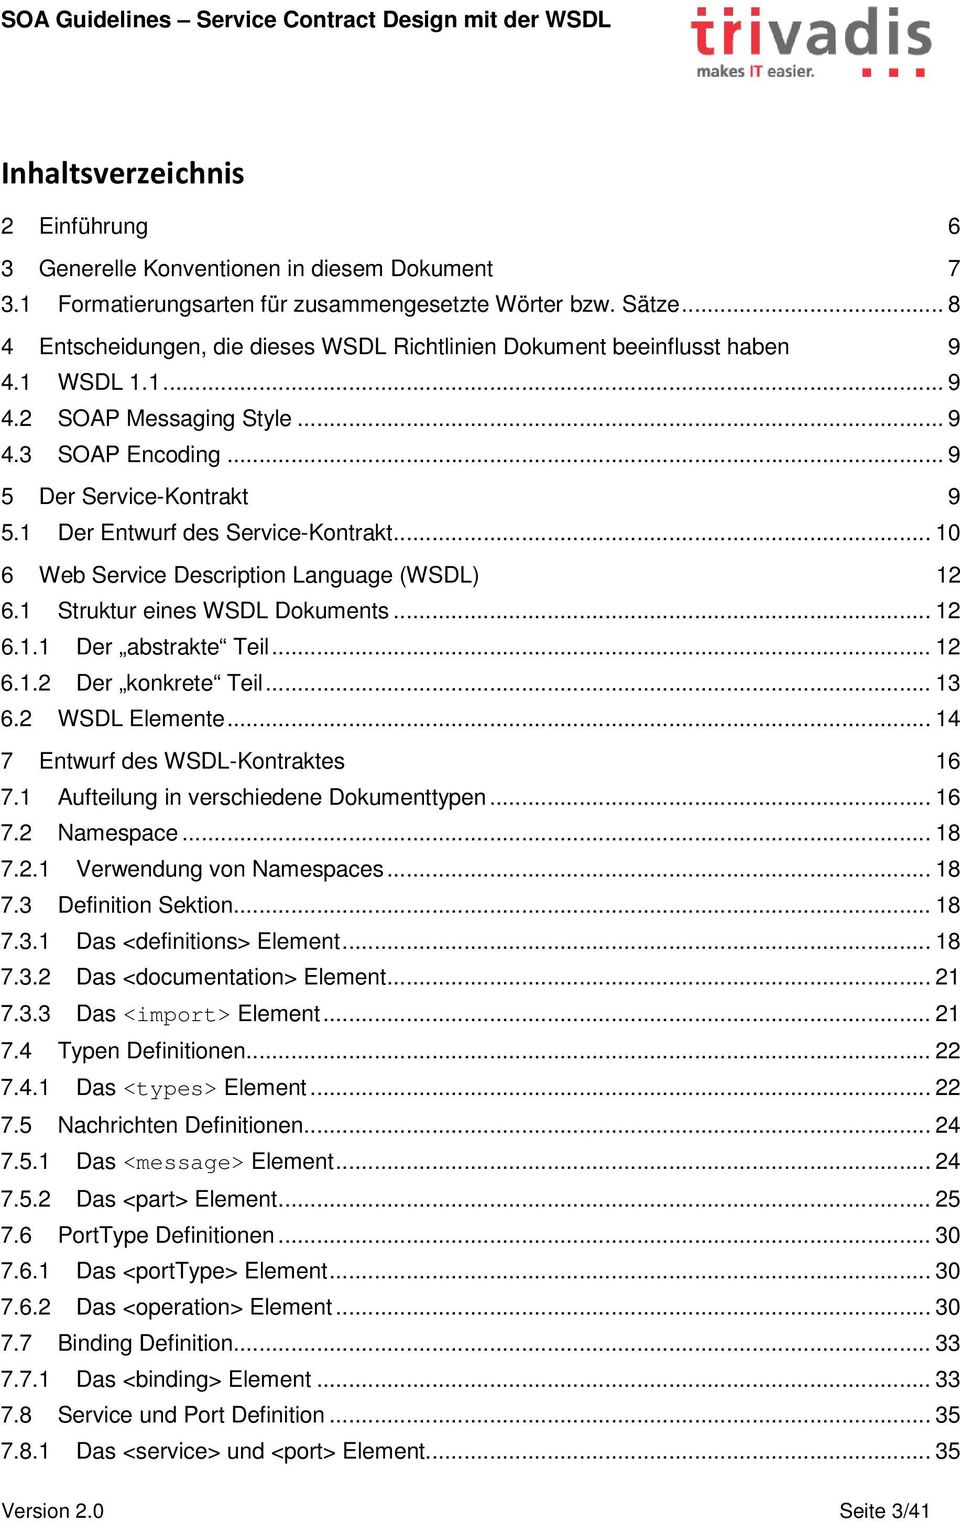 1 Der Entwurf des Service-Kontrakt... 10 6 Web Service Description Language (WSDL) 12 6.1 Struktur eines WSDL Dokuments... 12 6.1.1 Der abstrakte Teil... 12 6.1.2 Der konkrete Teil... 13 6.